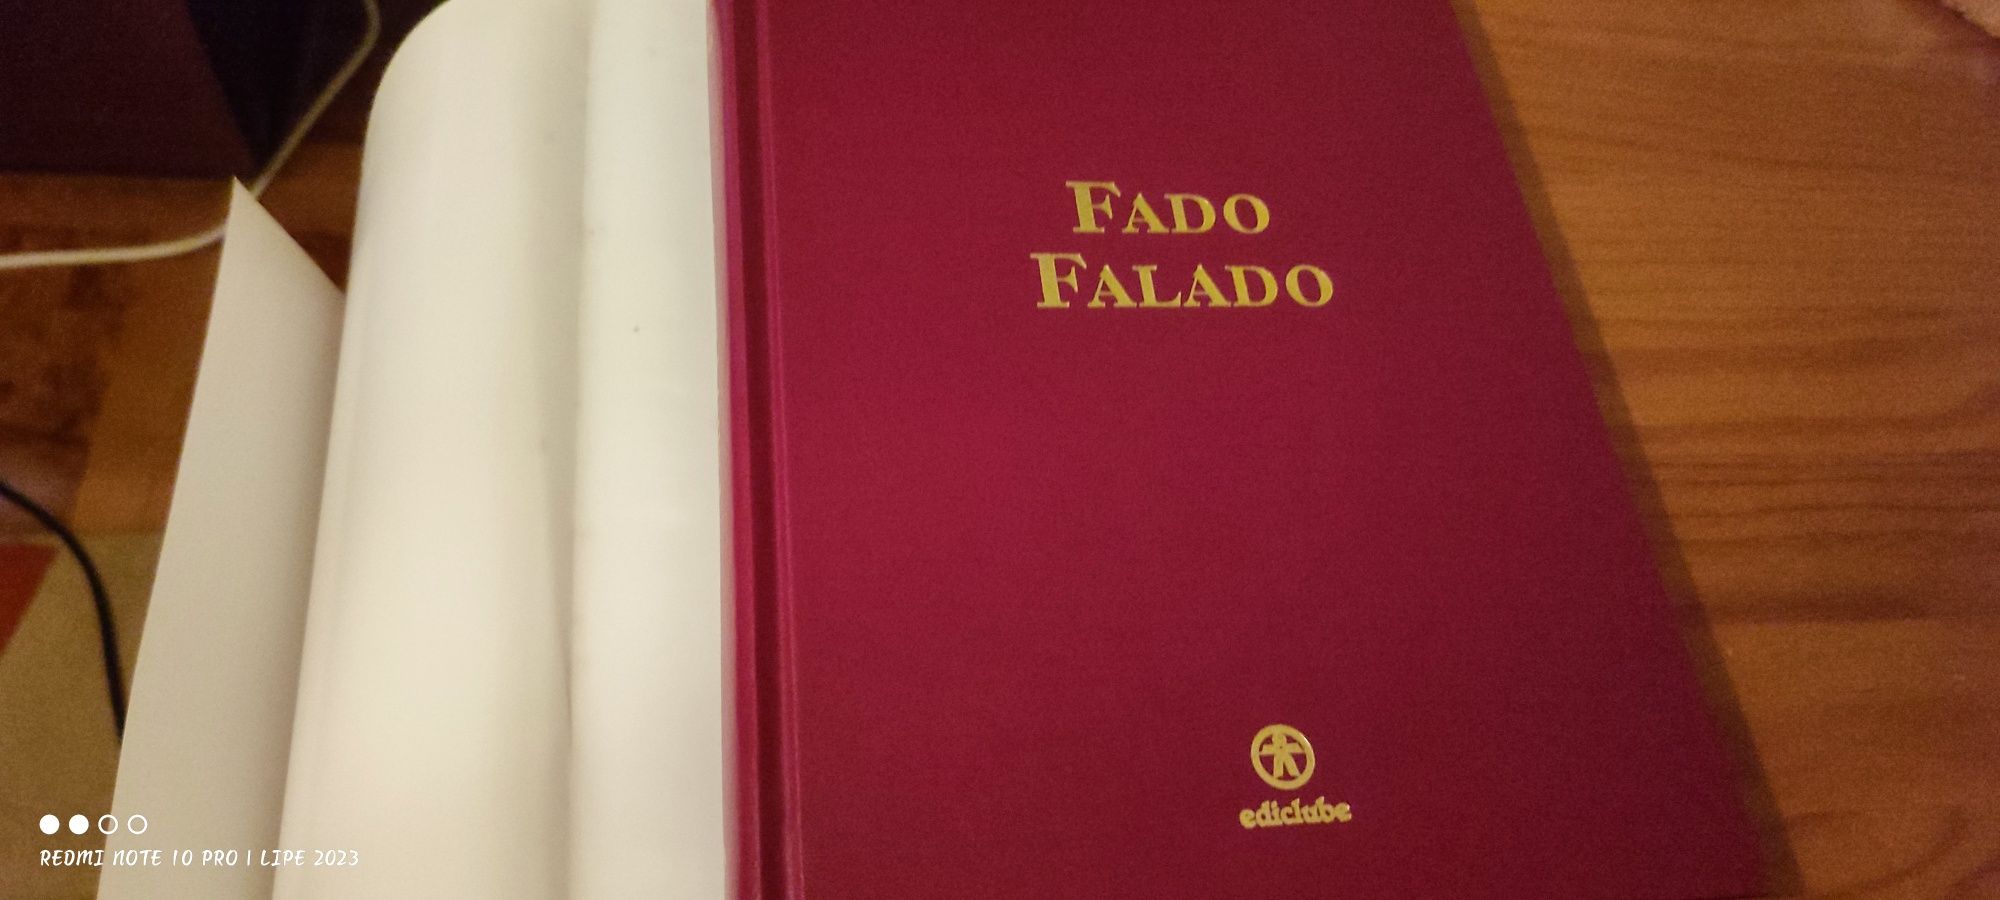 Livros Fado de Coimbra e Fado Falado